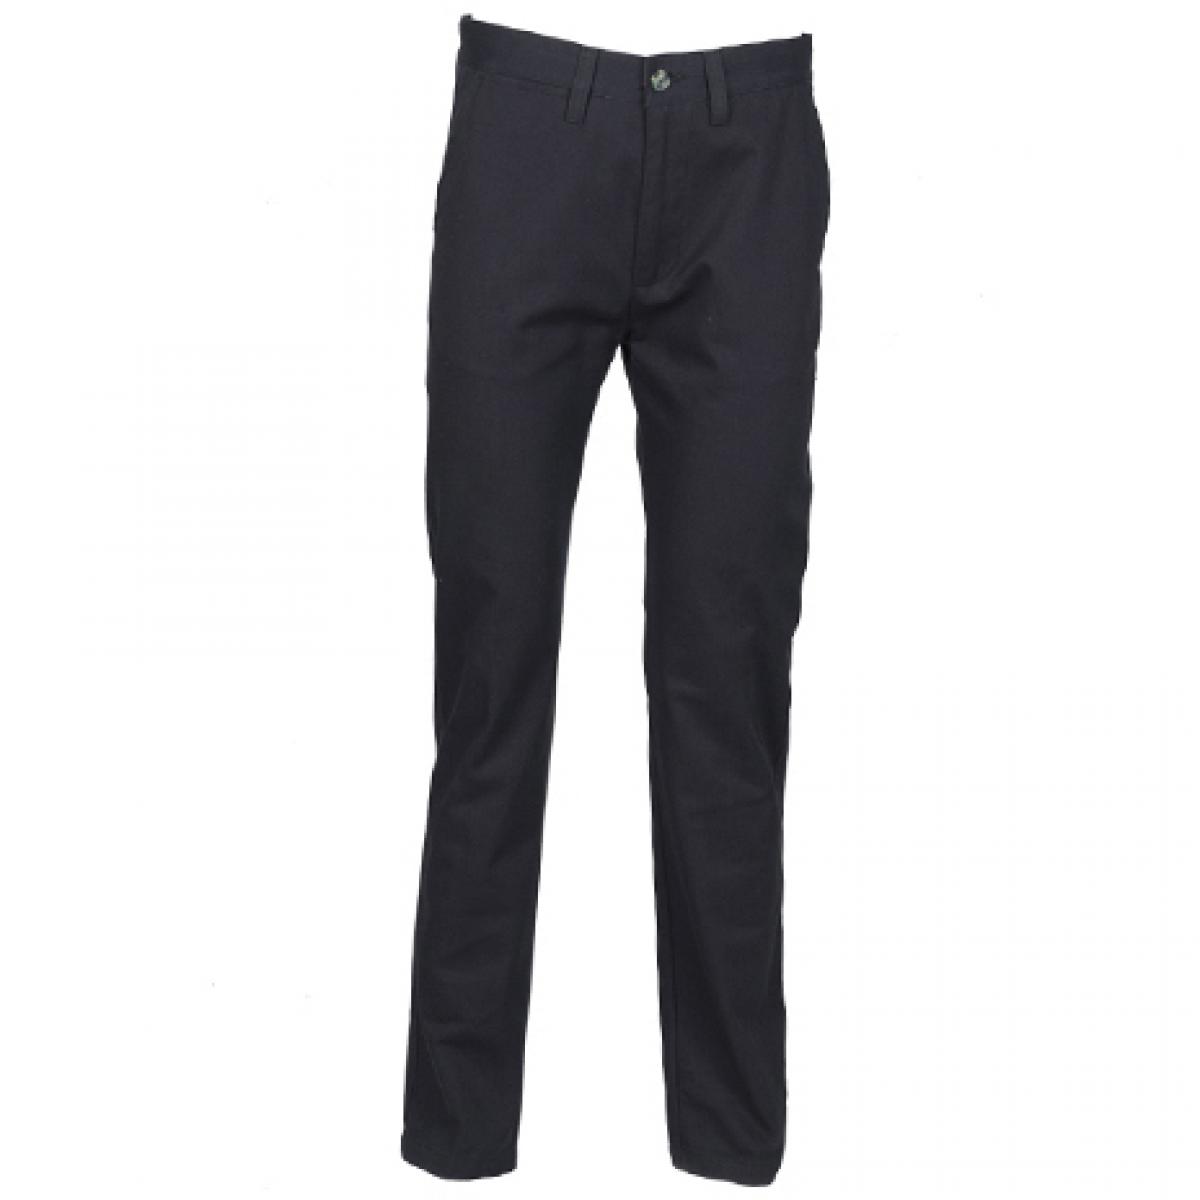 Hersteller: Henbury Herstellernummer: H640 Artikelbezeichnung: Men’s 65/35 Chino Trousers Farbe: Navy